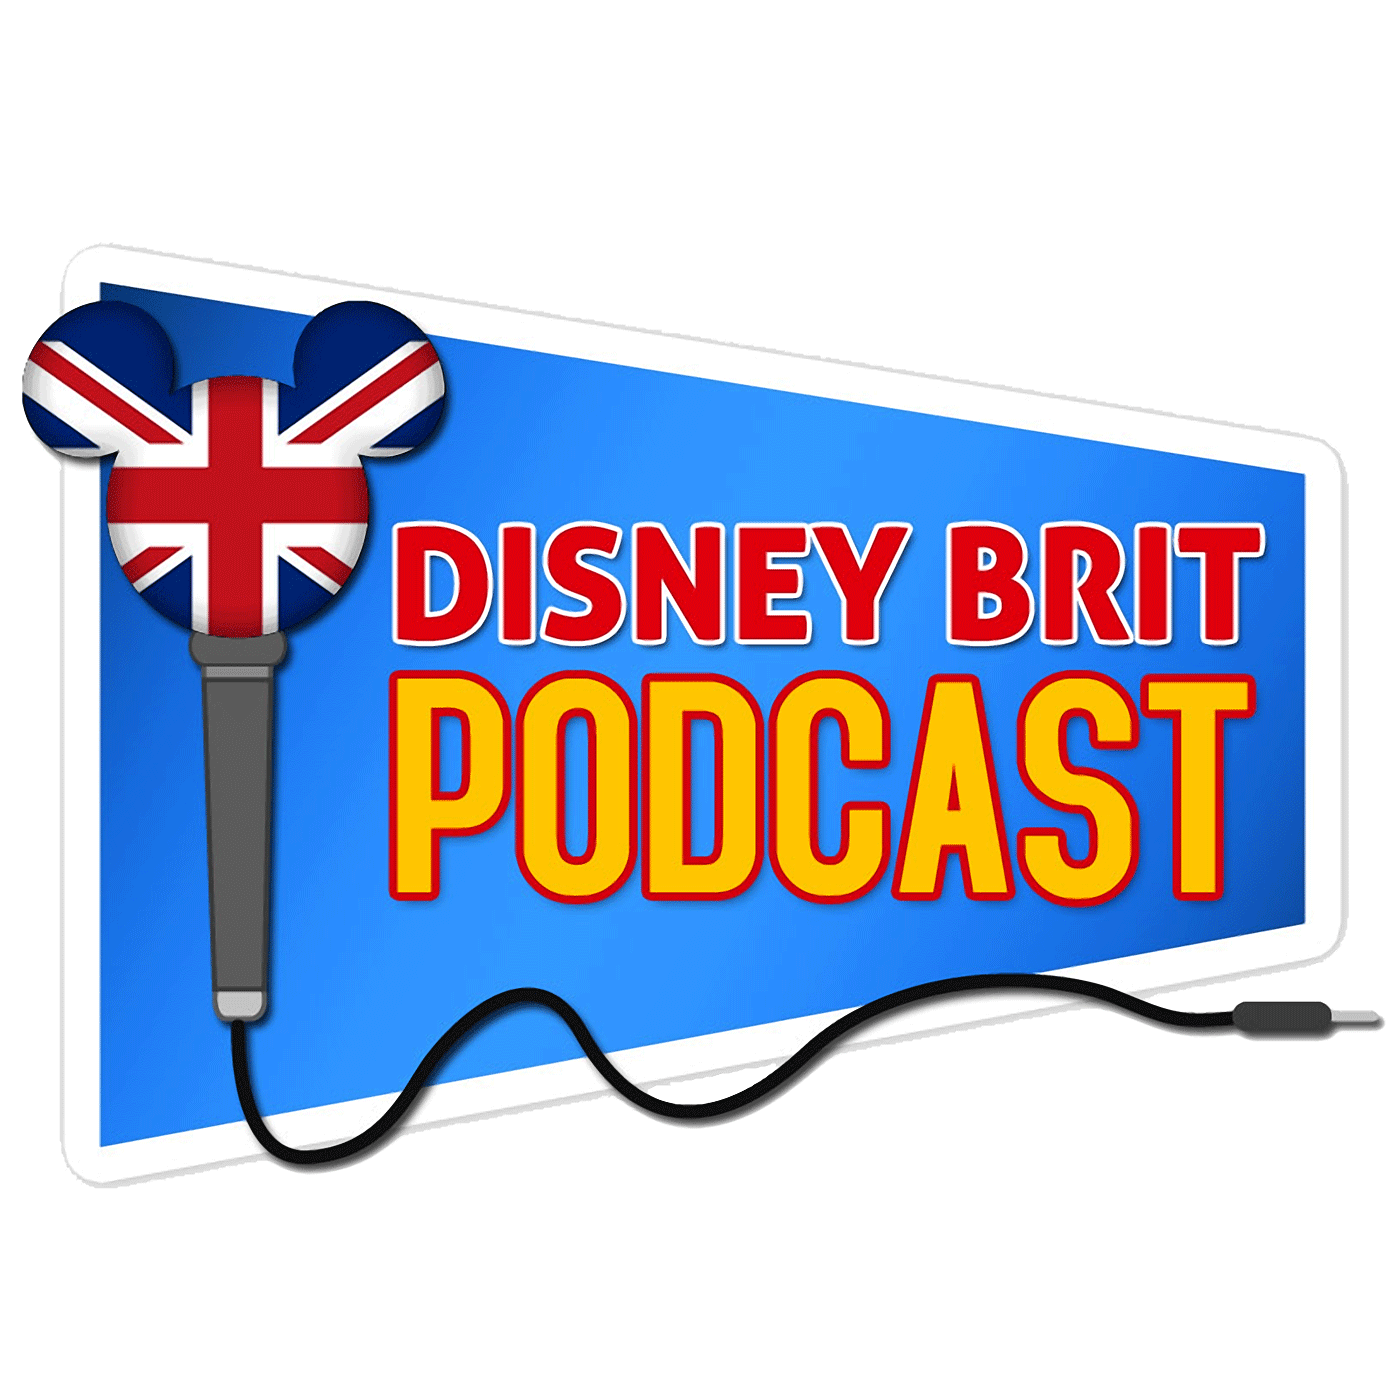 Disney Brit Podcast - Show 178 - Christmas